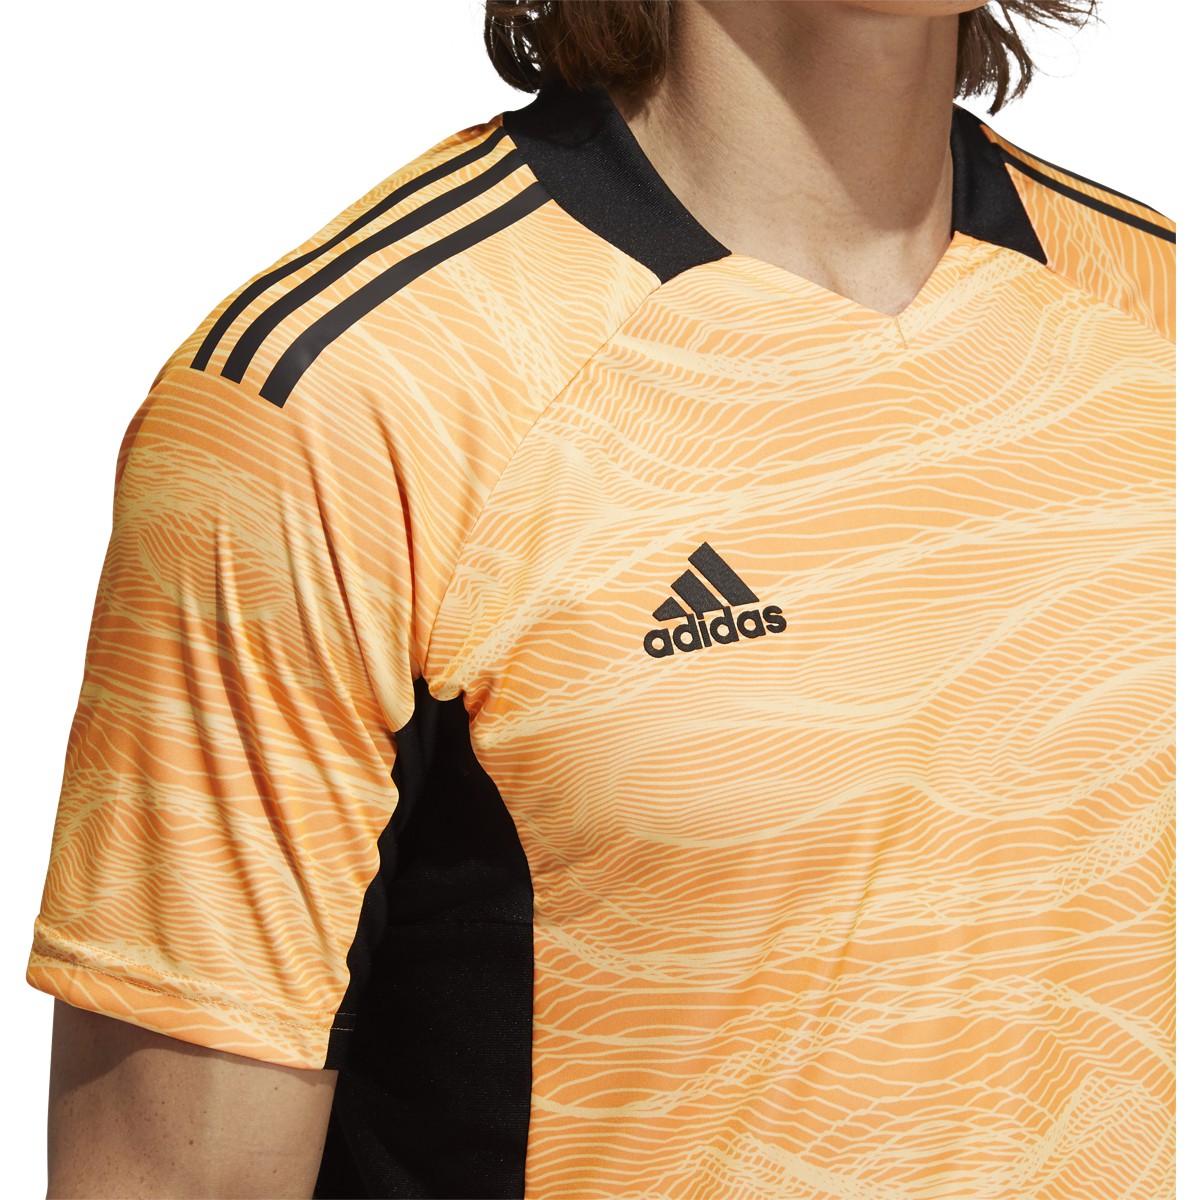 adidas - Condivo 21 Goalkeeper Jersey - Goalkeeper Shirt